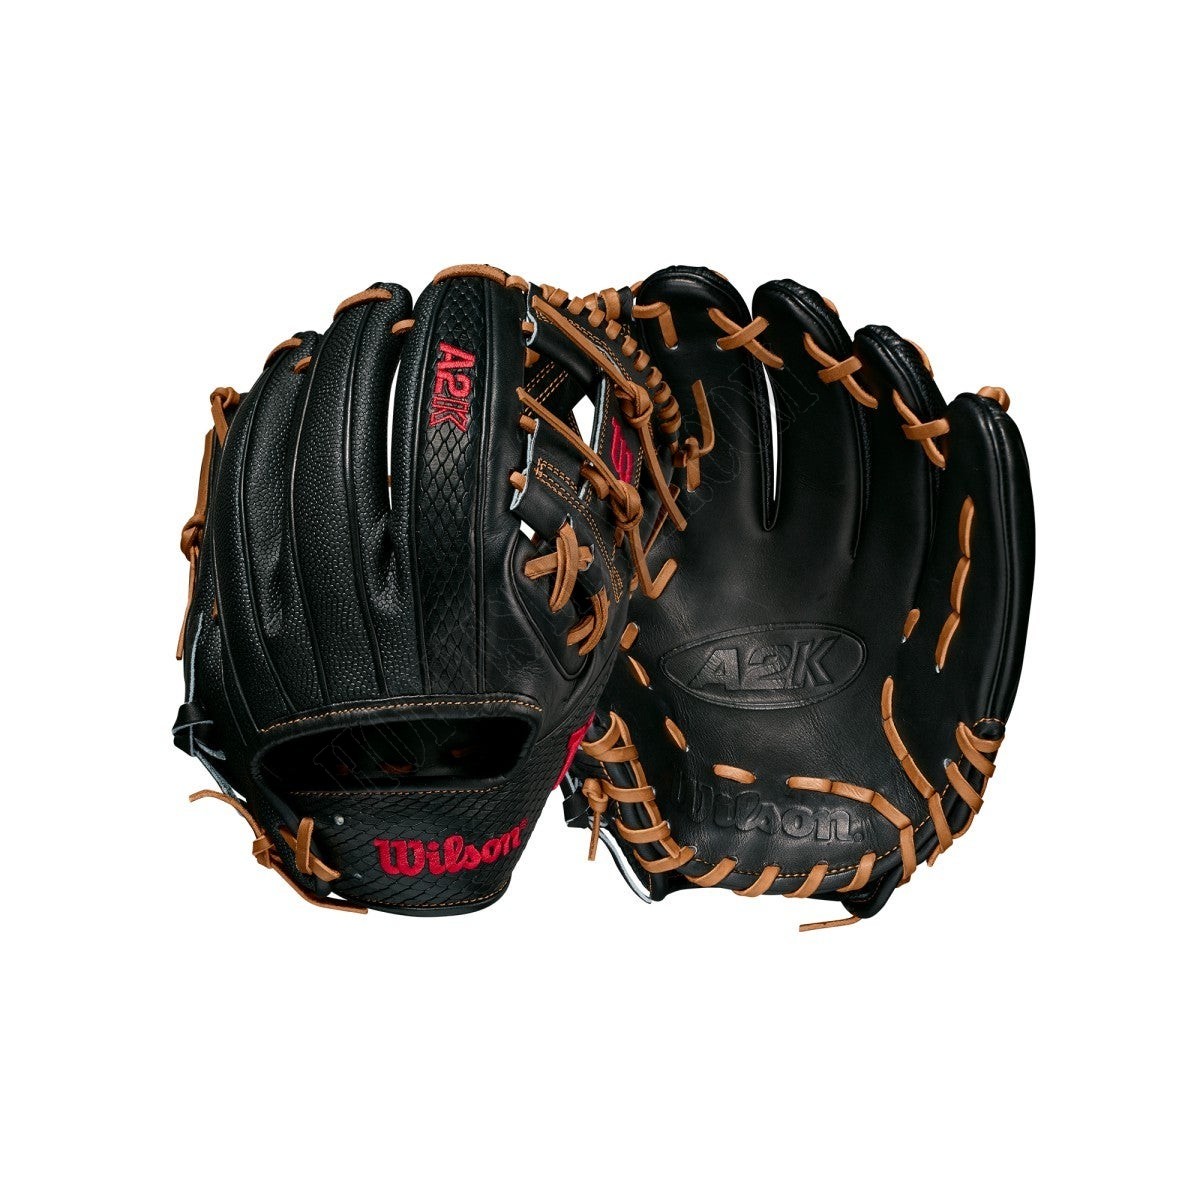 2021 A2K 1786SS 11.5" Infield Baseball Glove ● Wilson Promotions - 2021 A2K 1786SS 11.5" Infield Baseball Glove ● Wilson Promotions